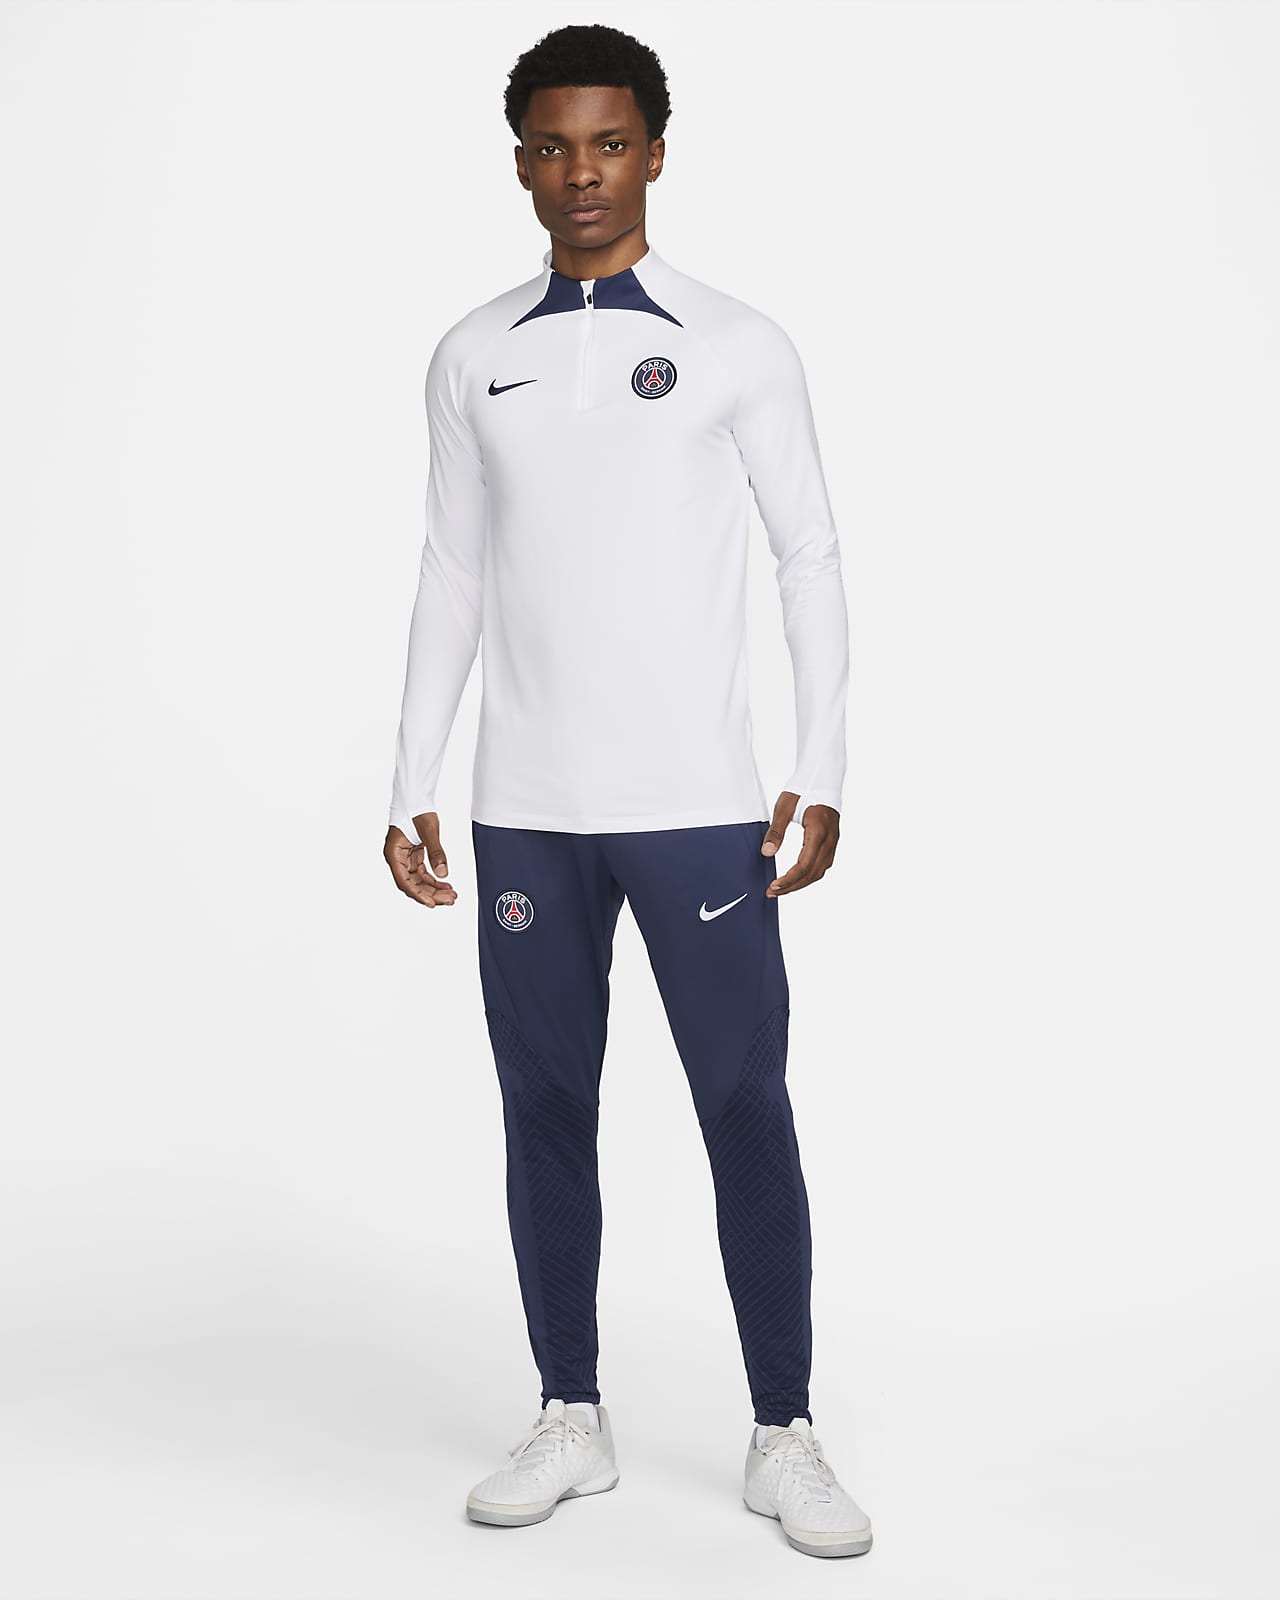 Paris Saint-Germain Strike Men's Nike Dri-FIT Soccer Drill Top.